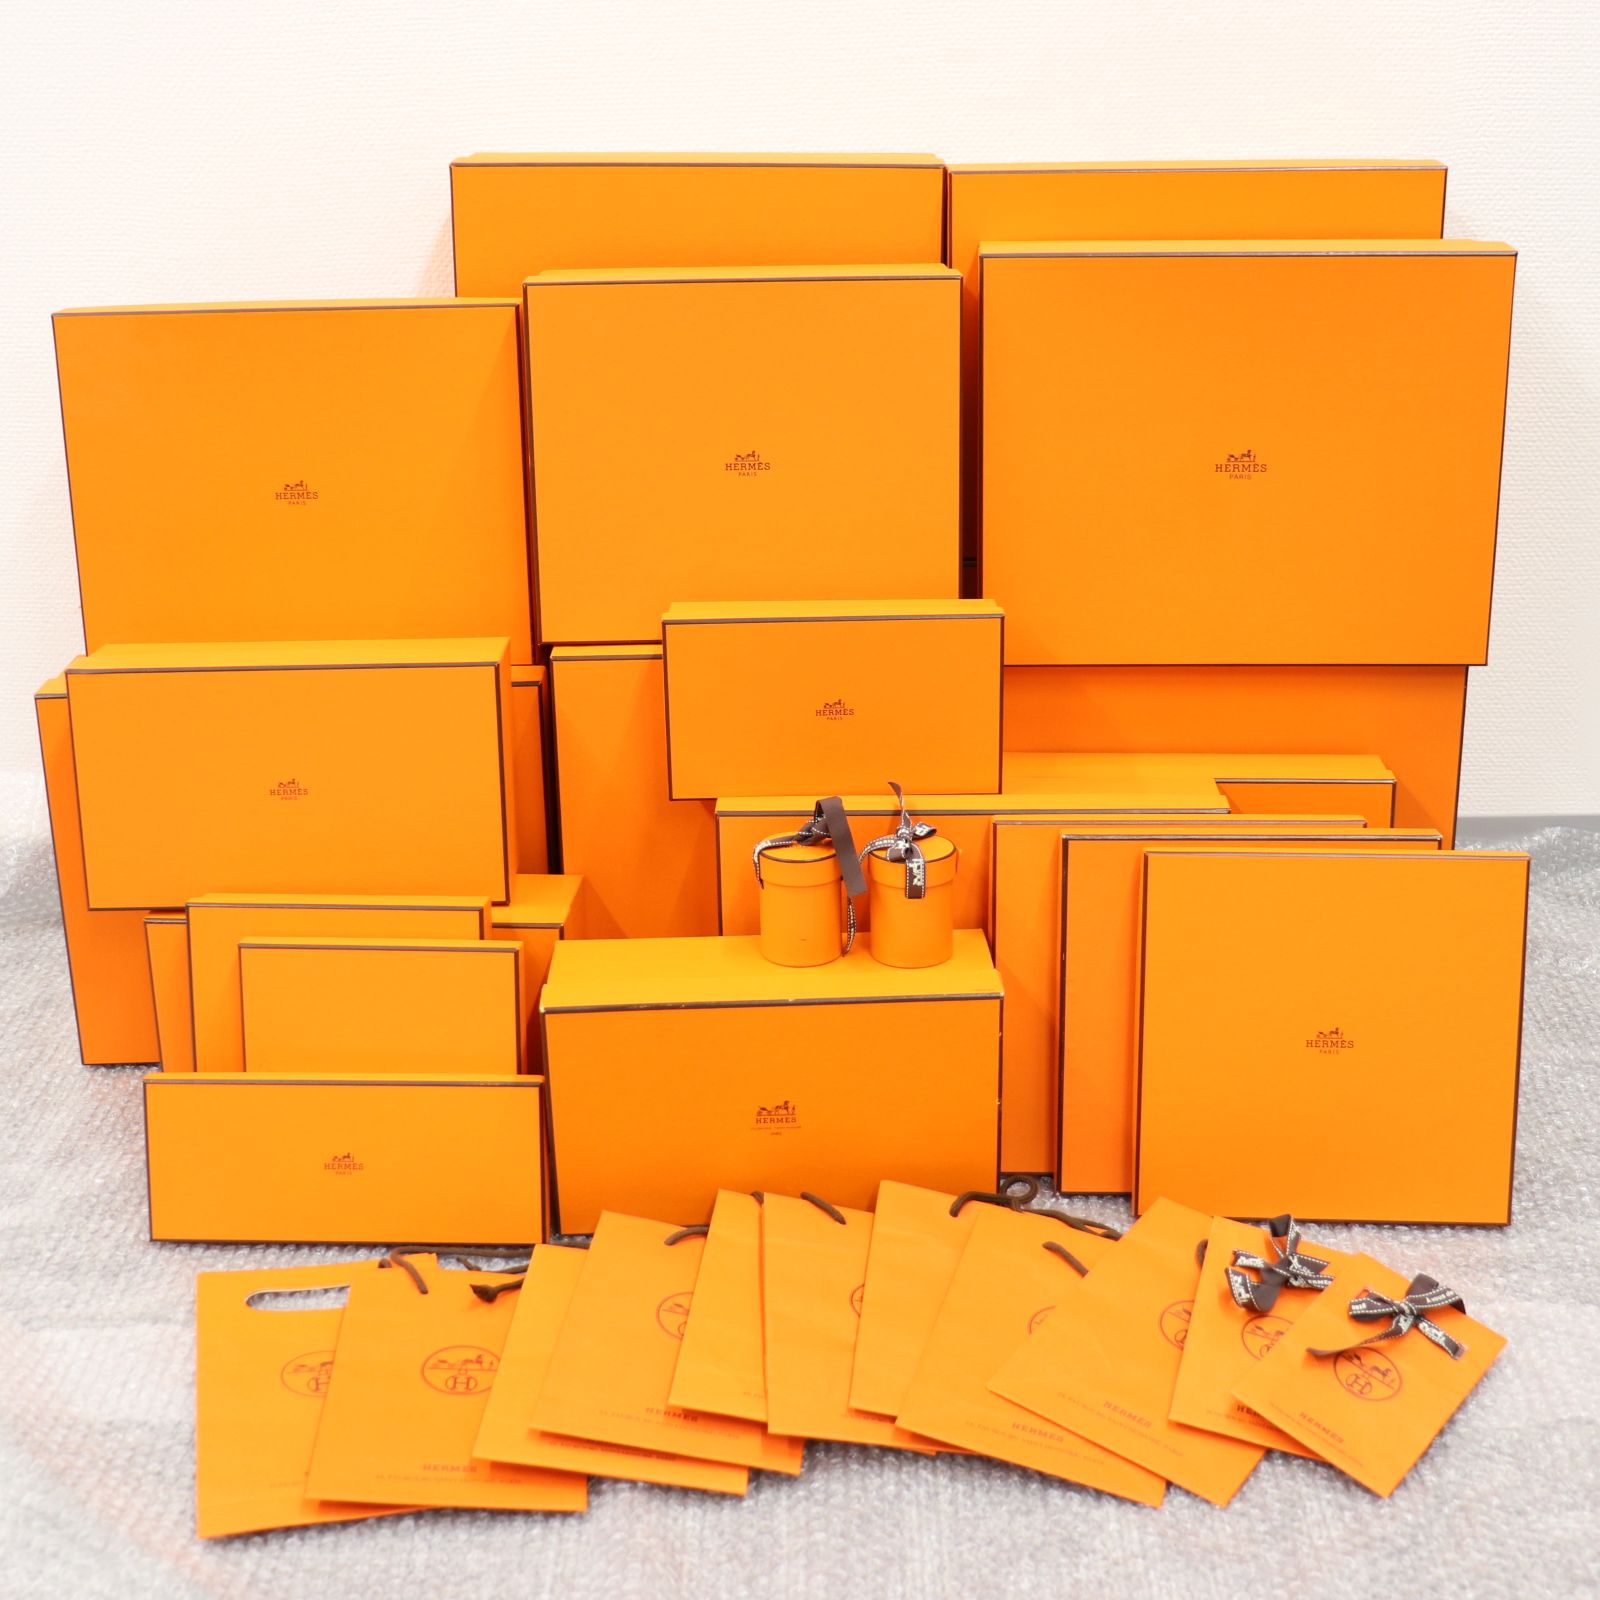 ITNM0XVGK43C エルメス ブランド 箱 BOX 保存袋 純正 空き箱 オレンジ 